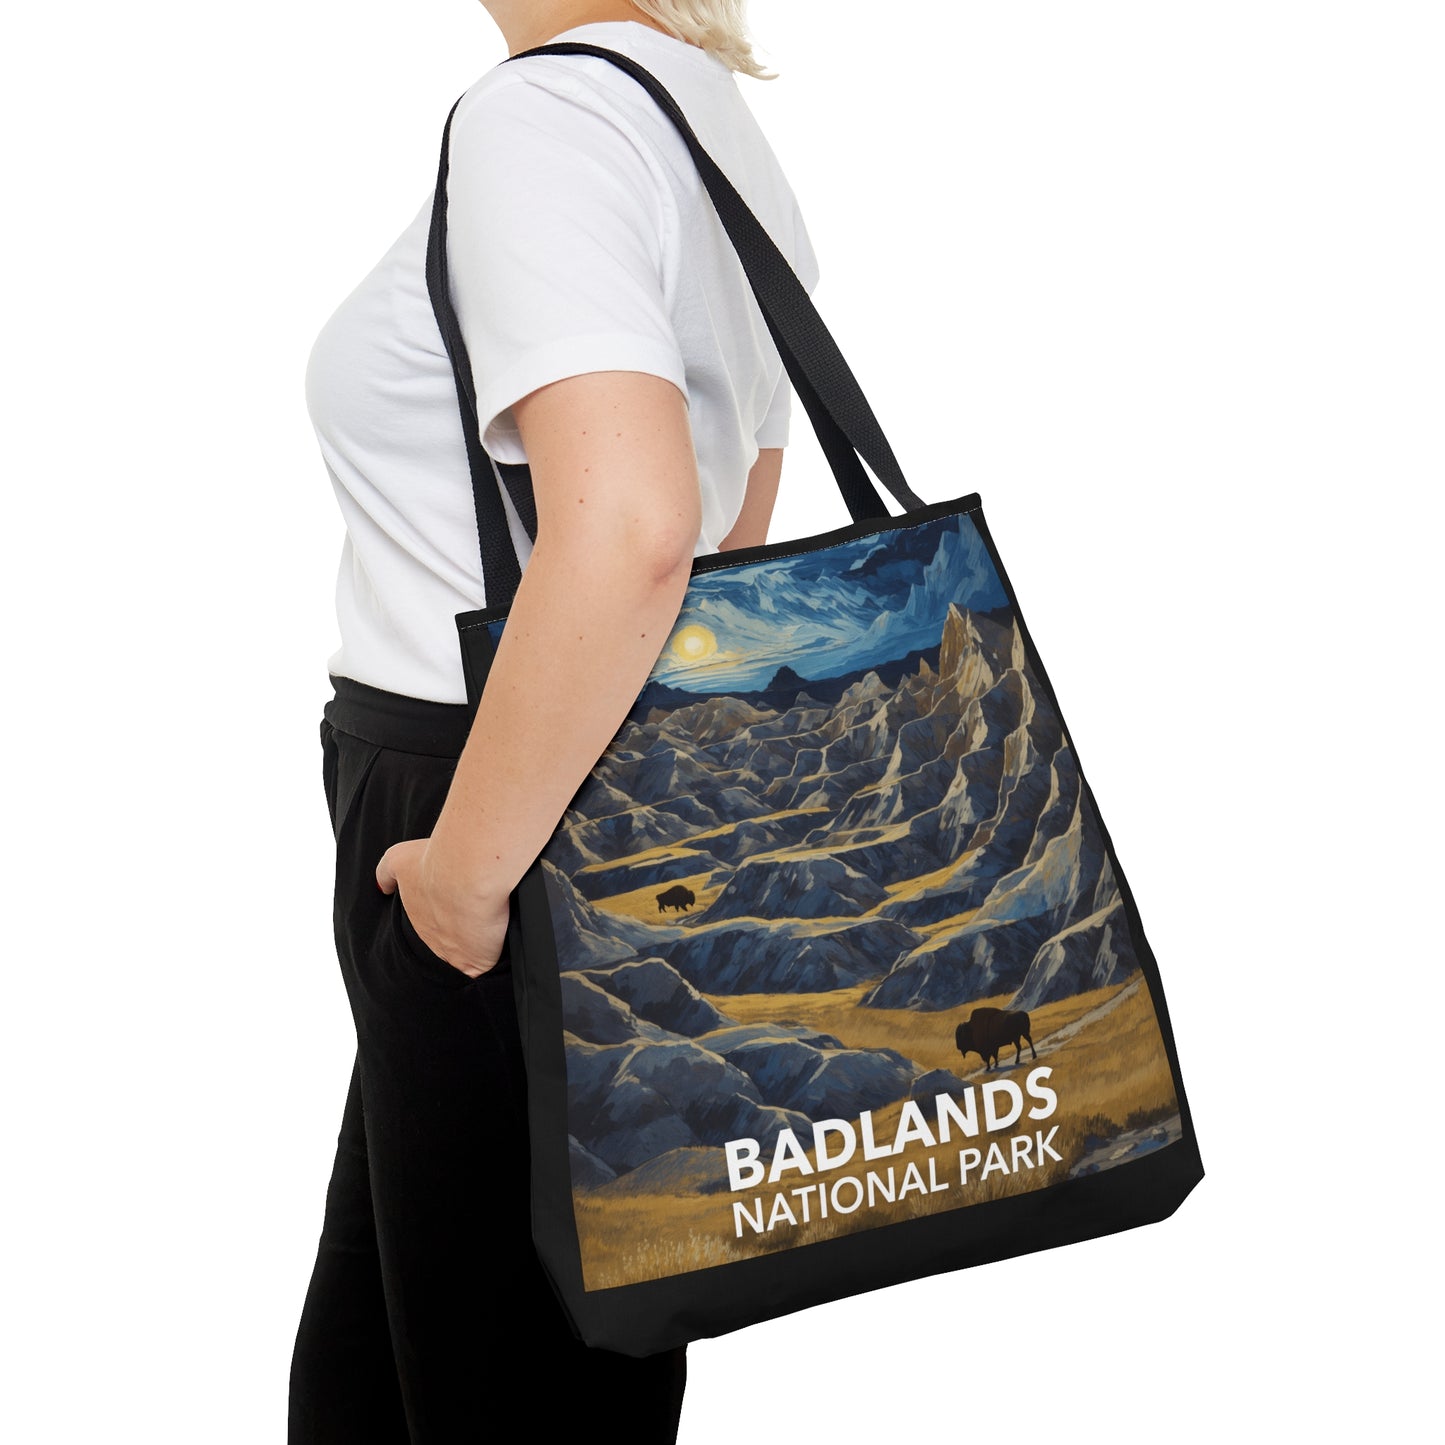 Badlands National Park Tote Bag - Starry Night